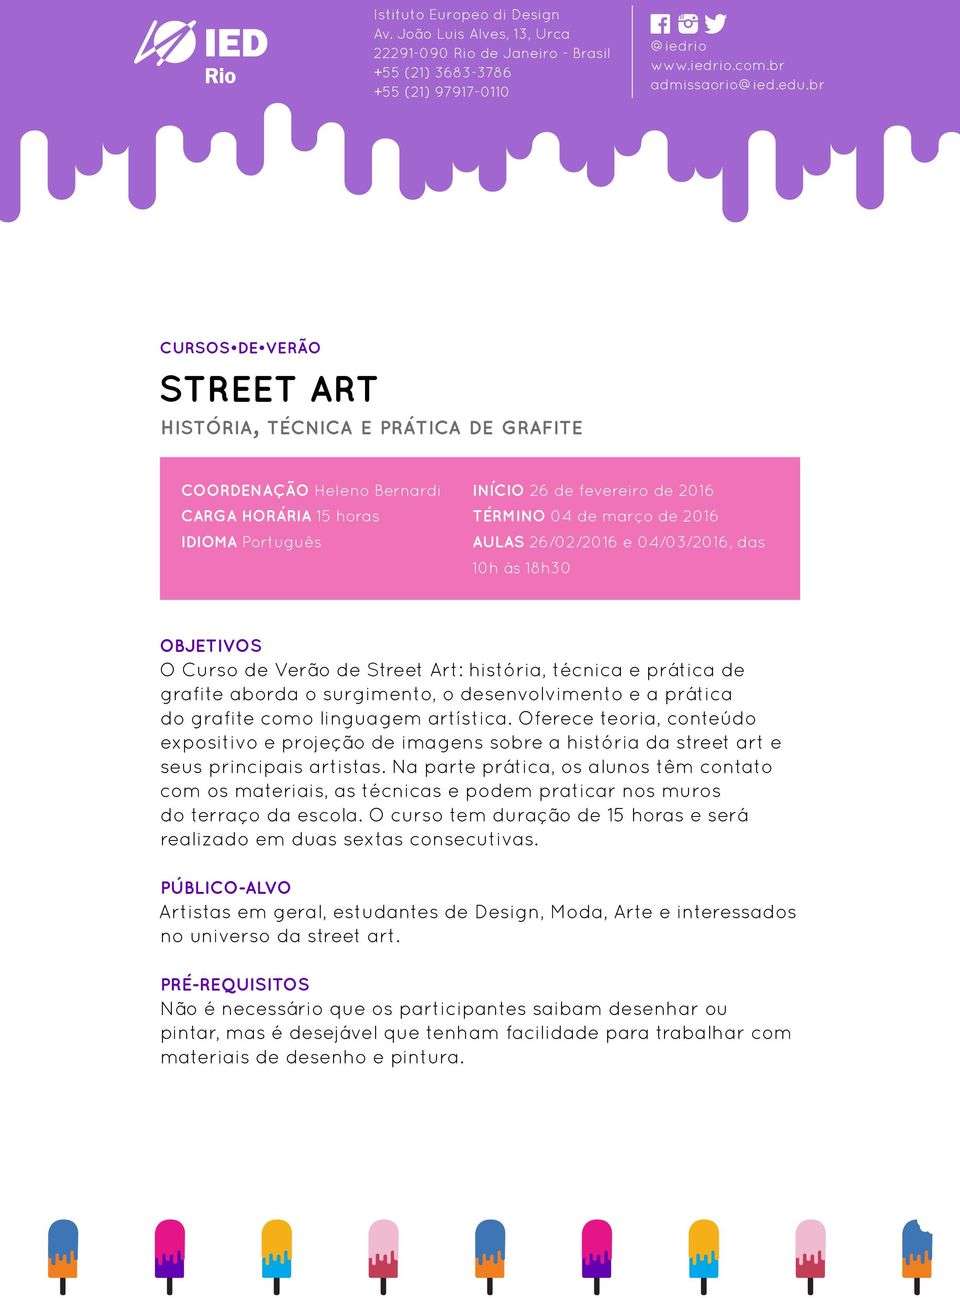 artística. Oferece teoria, conteúdo expositivo e projeção de imagens sobre a história da street art e seus principais artistas.